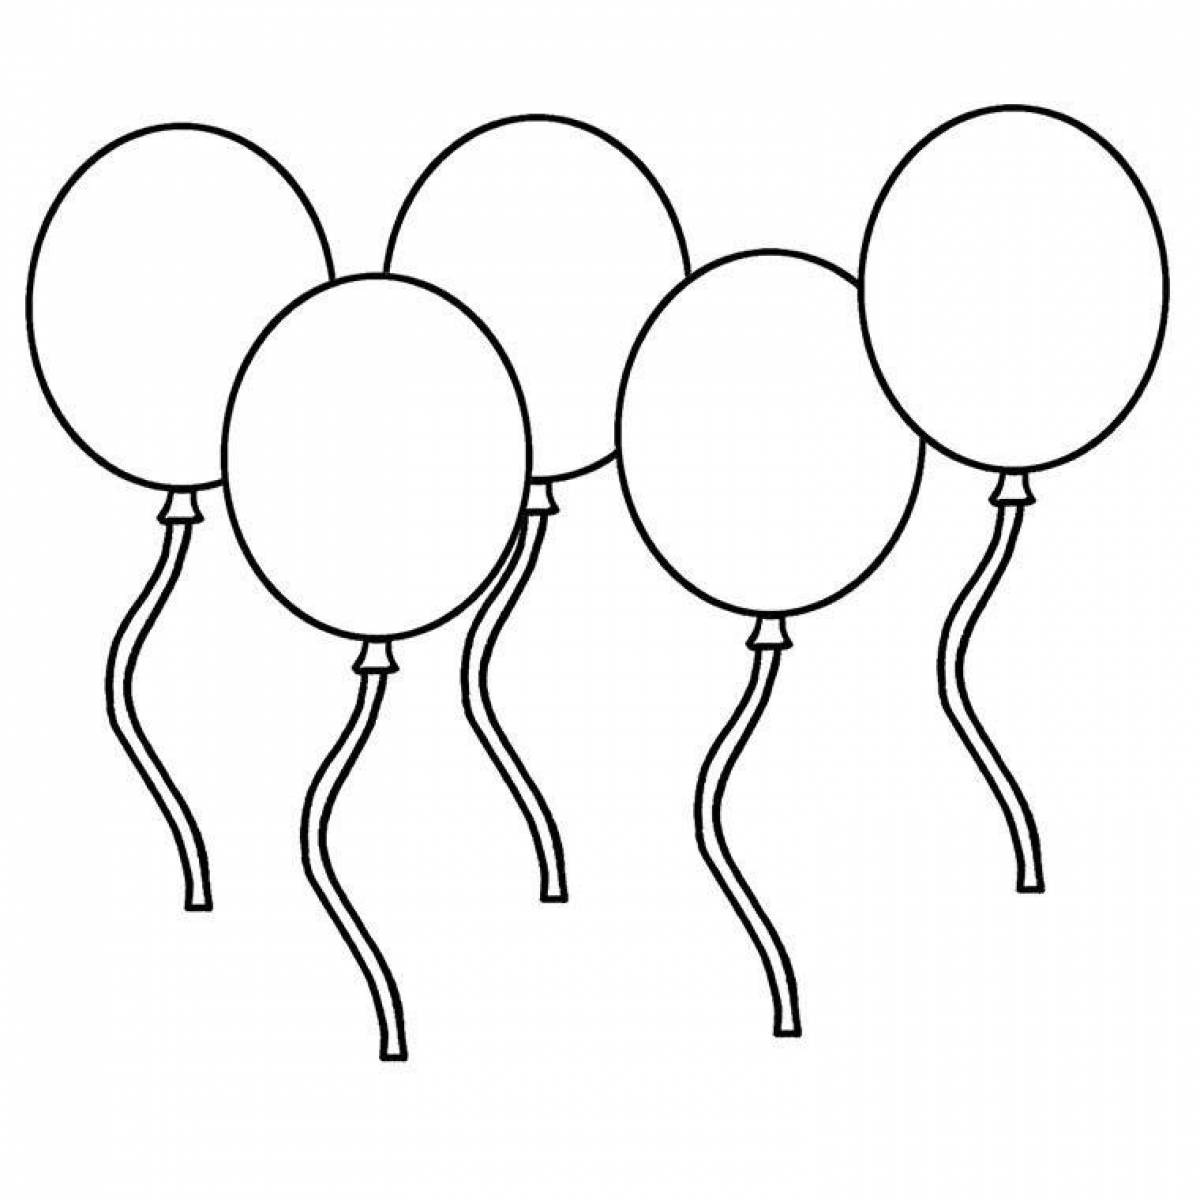 Игривая страница раскраски воздушных шаров для детей